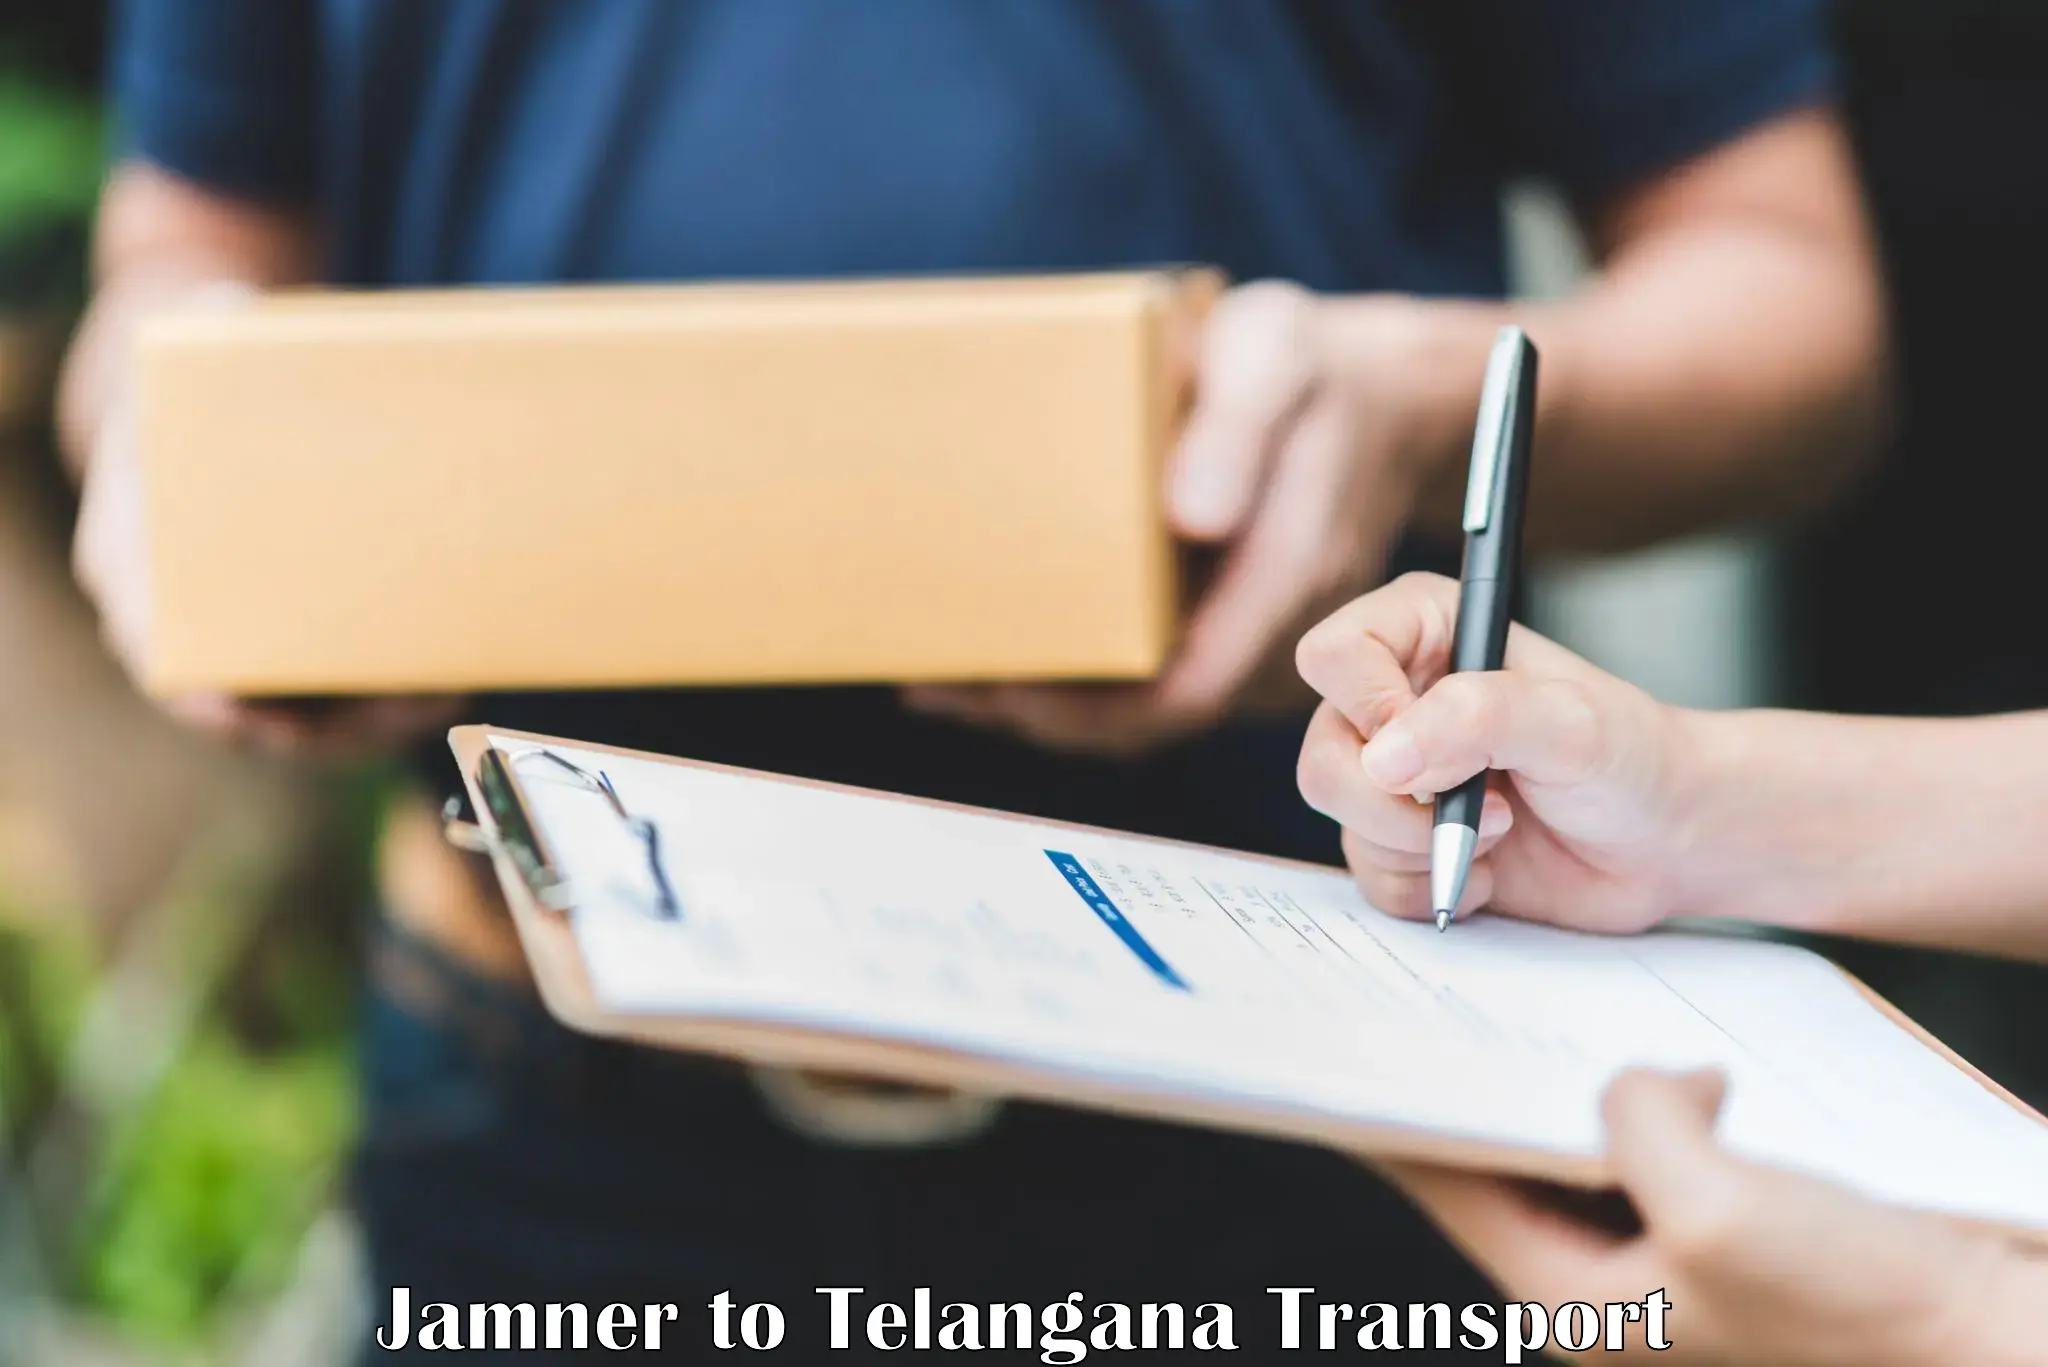 Online transport service Jamner to Chennur